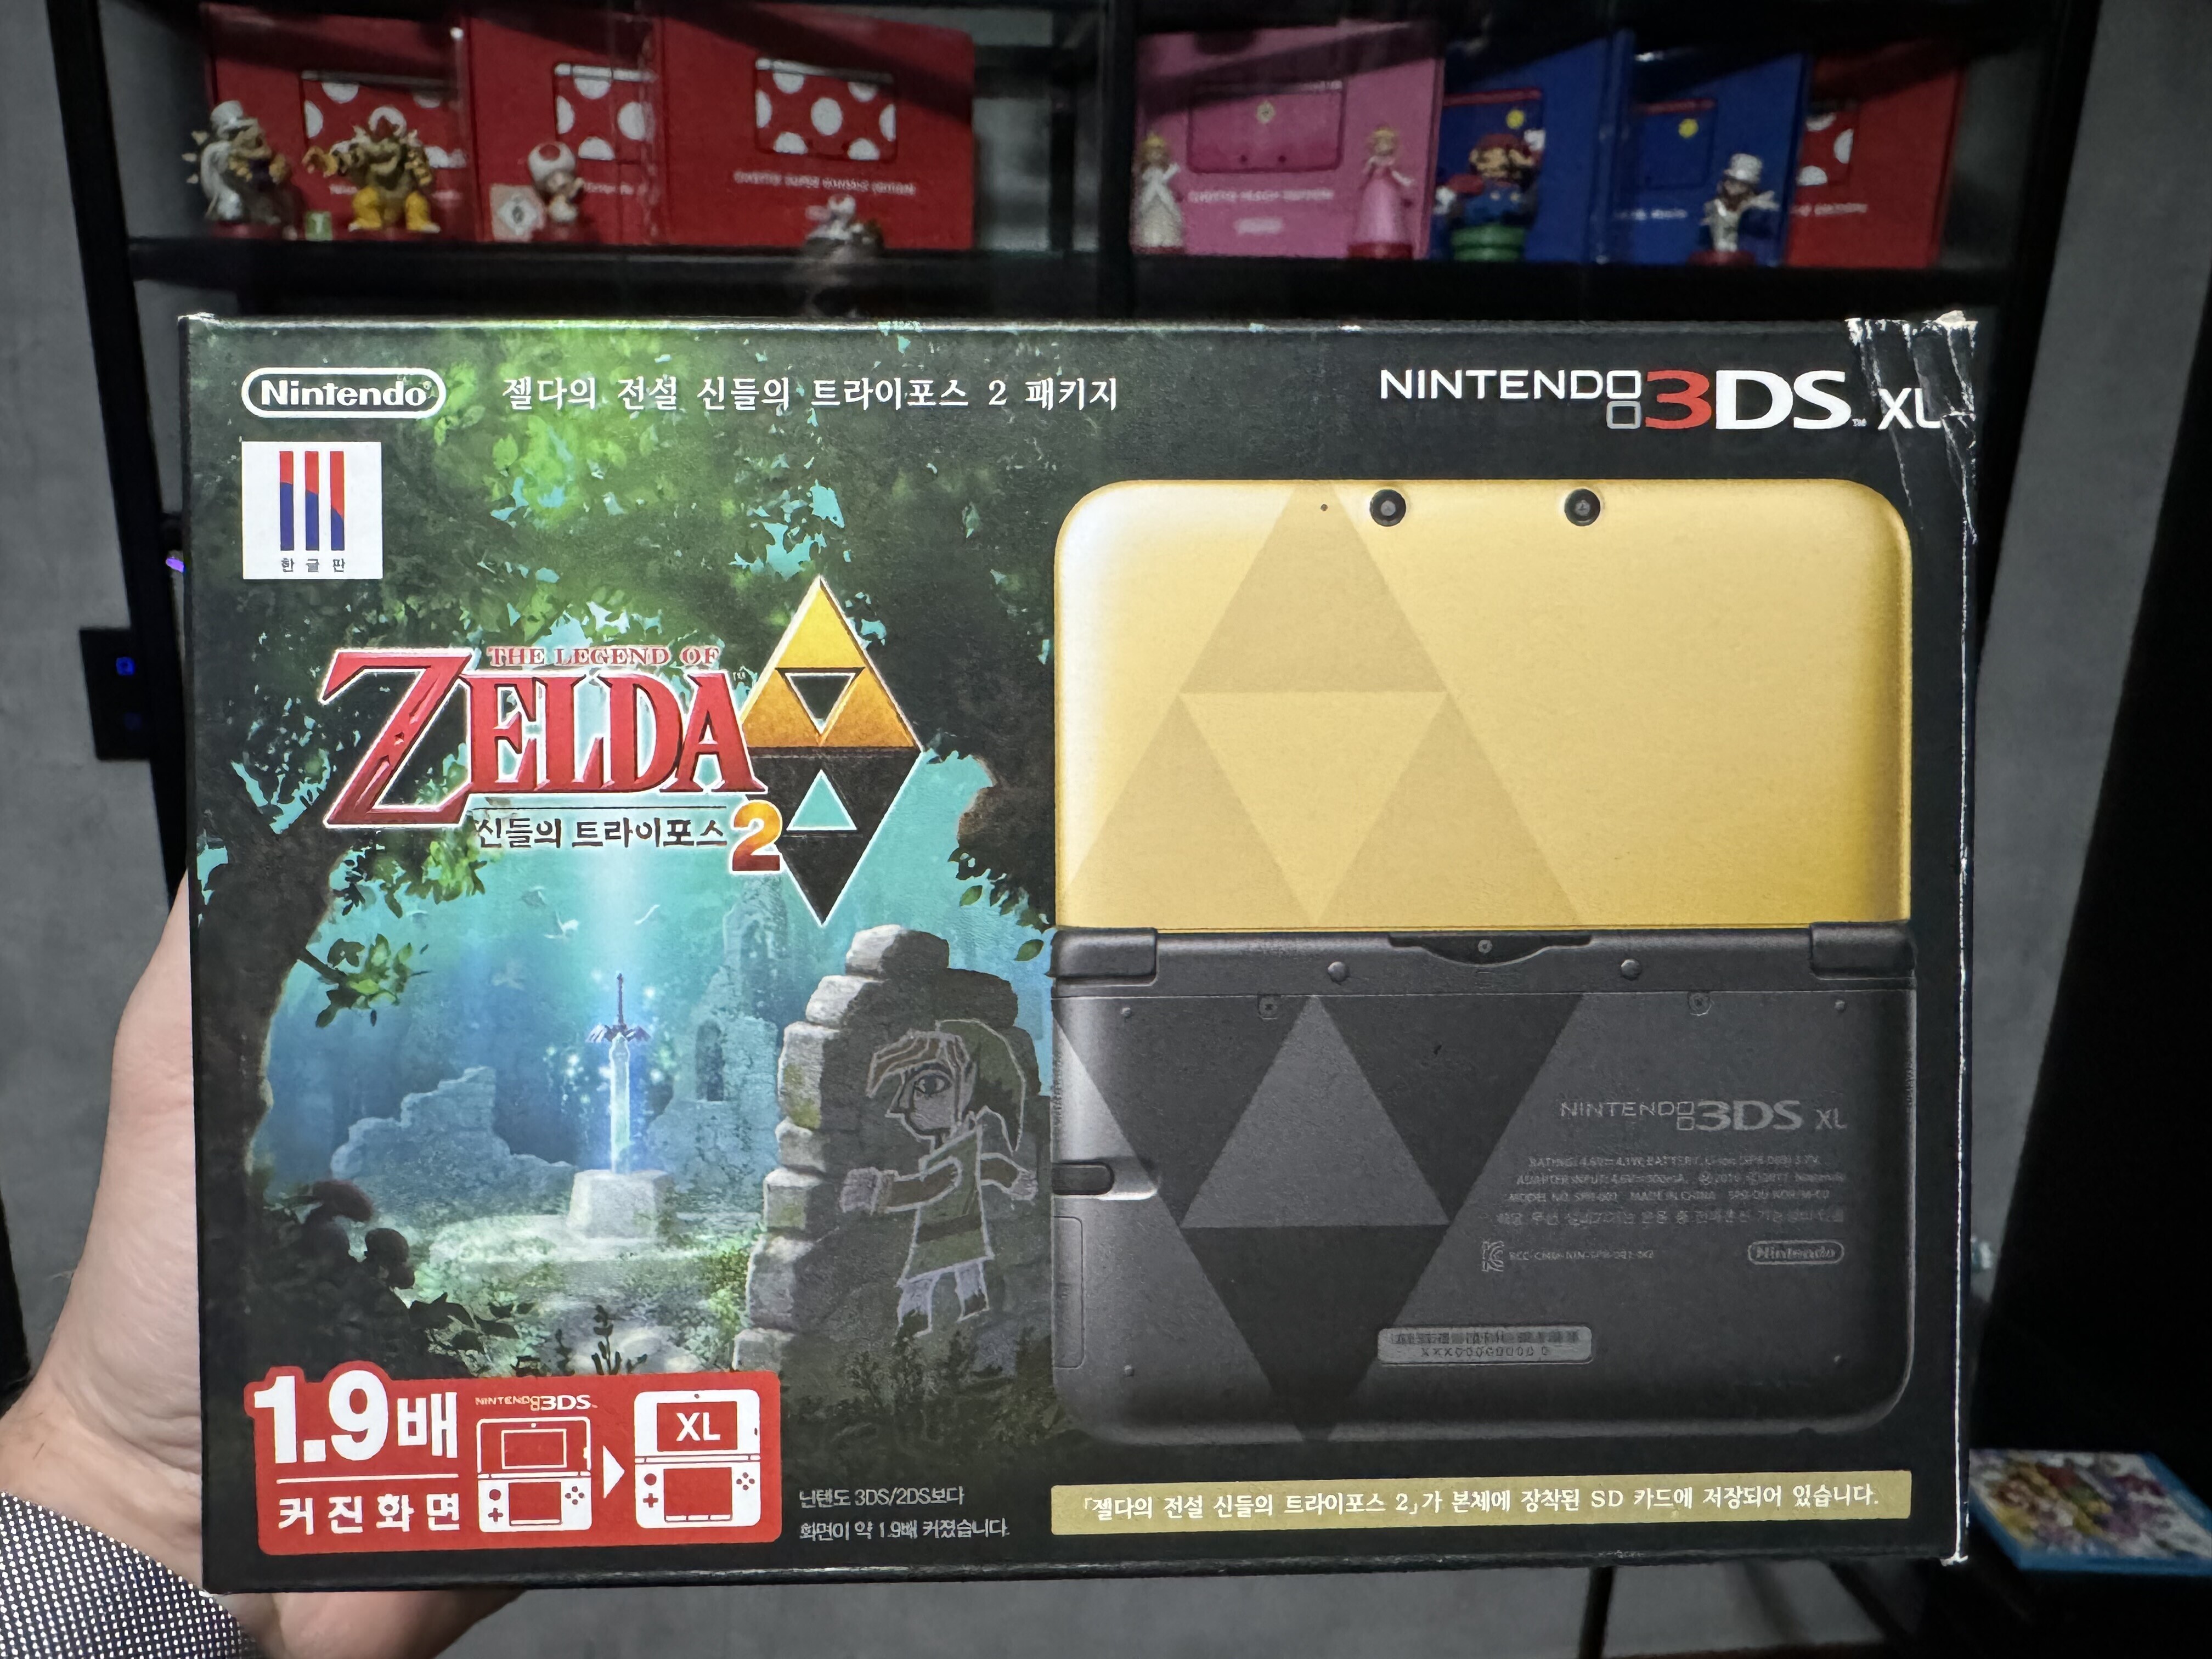  Nintendo 3DS Xl Zelda A Link Between Worlds Console [KOR]